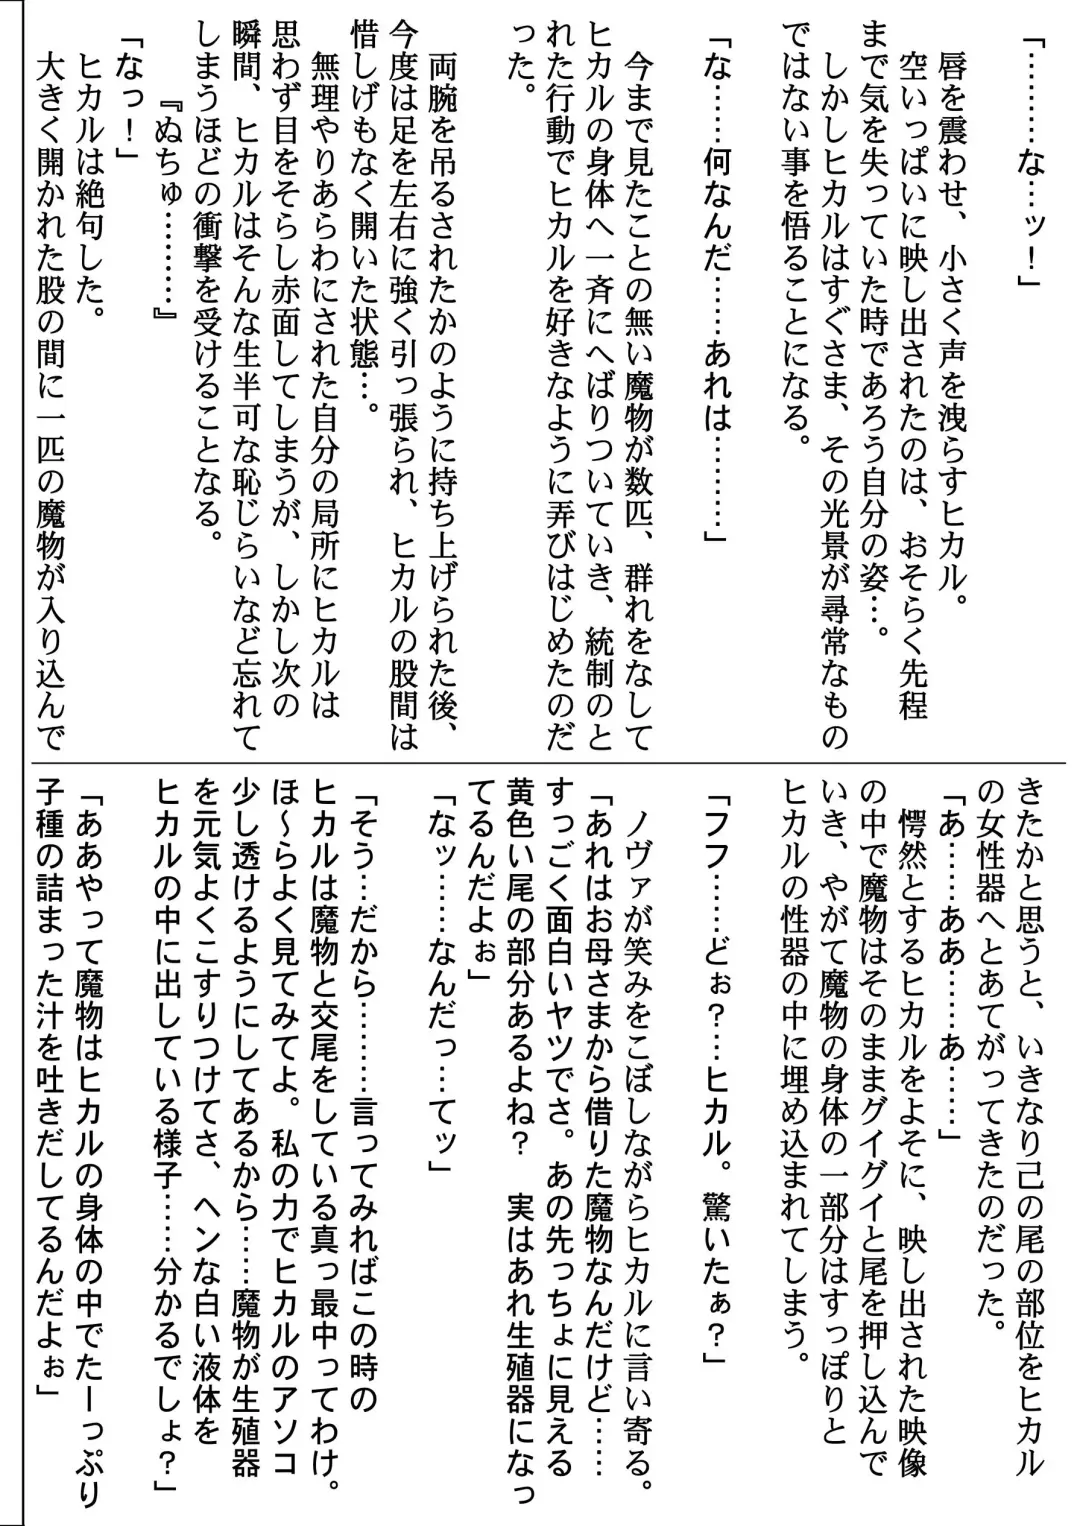 [Izumi - Reizei] Centris Download edition Fhentai.net - Page 224